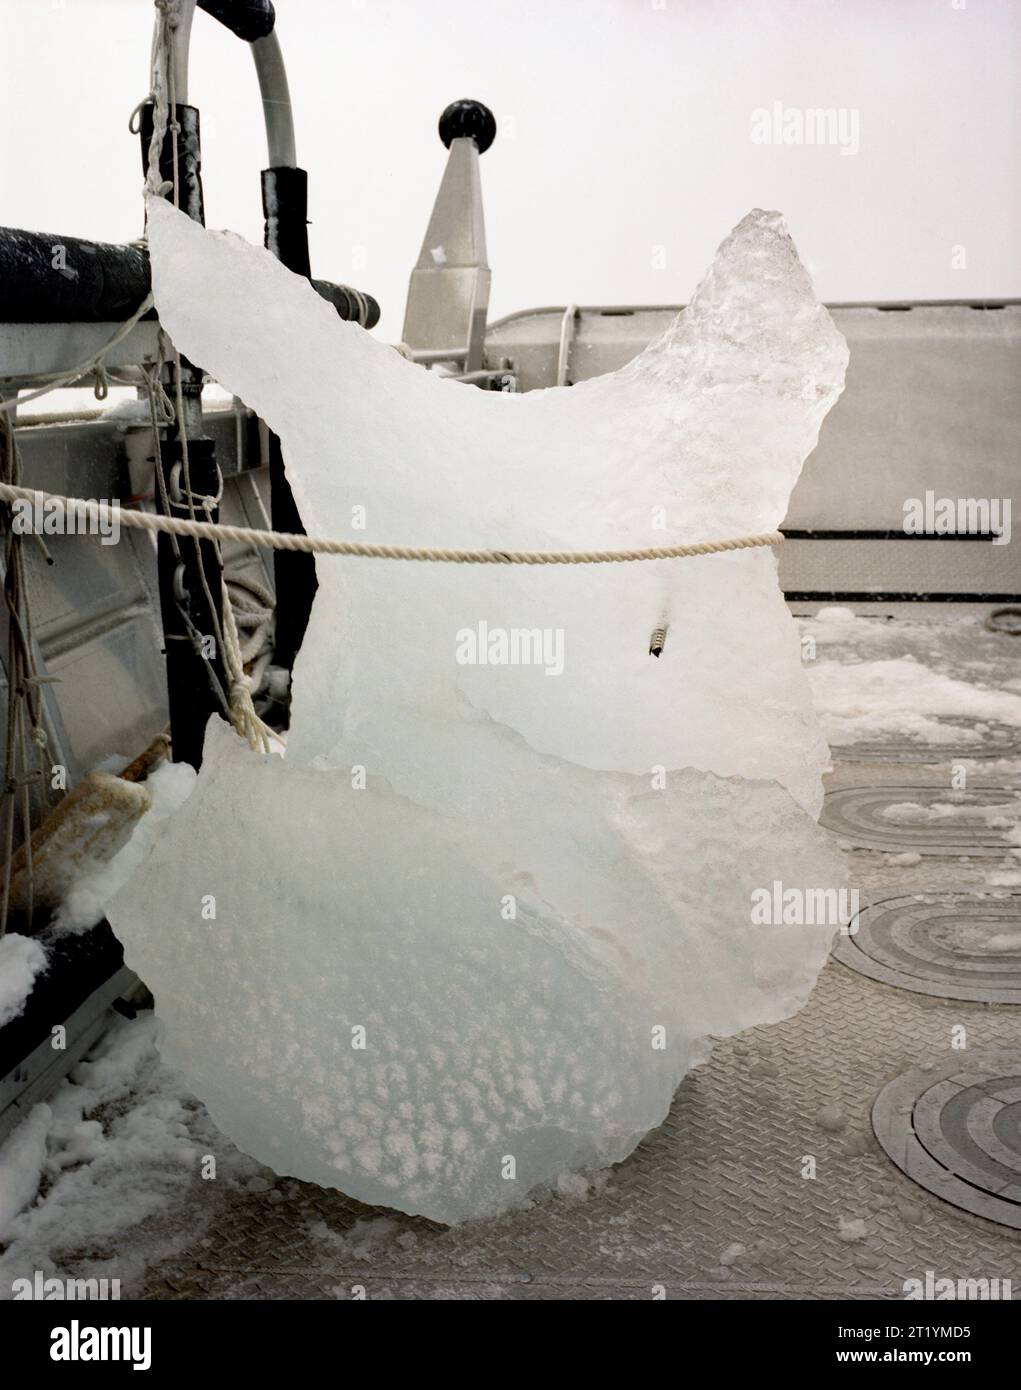 Une vis à glace dans un gros morceau de glace à l'avant d'un bateau couvert de neige dans les eaux de Prince William Sound, Alaska. Banque D'Images